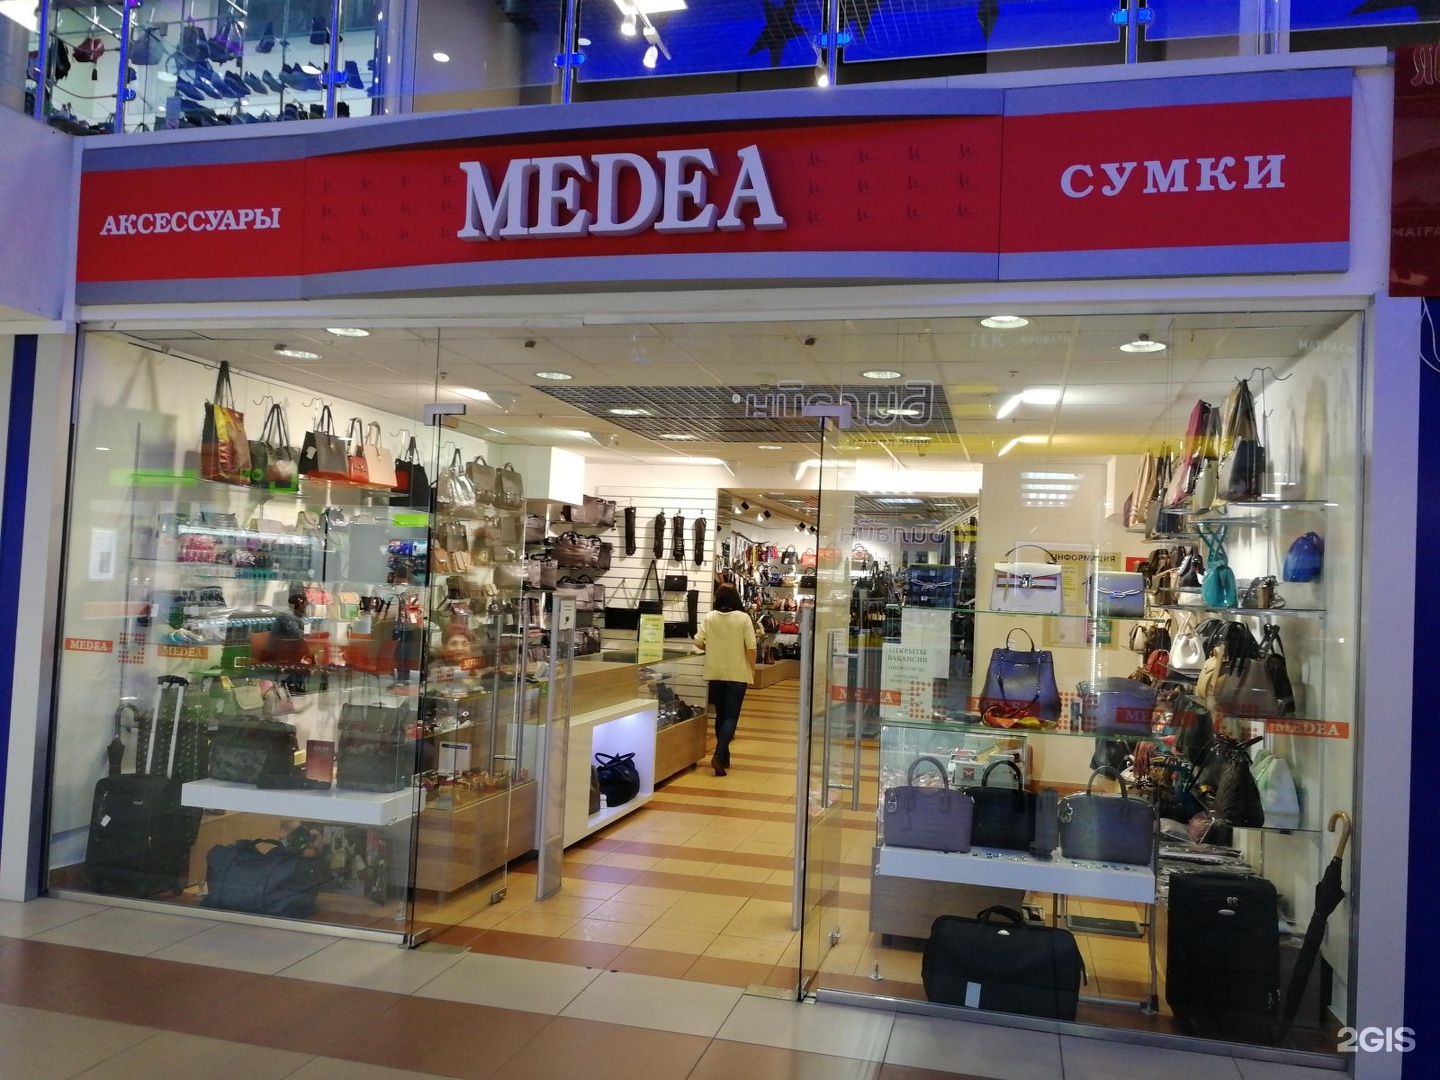 Где центр обувь. Medea обувь. Фирма Медея. Медея магазин. Обучной центр для языков.